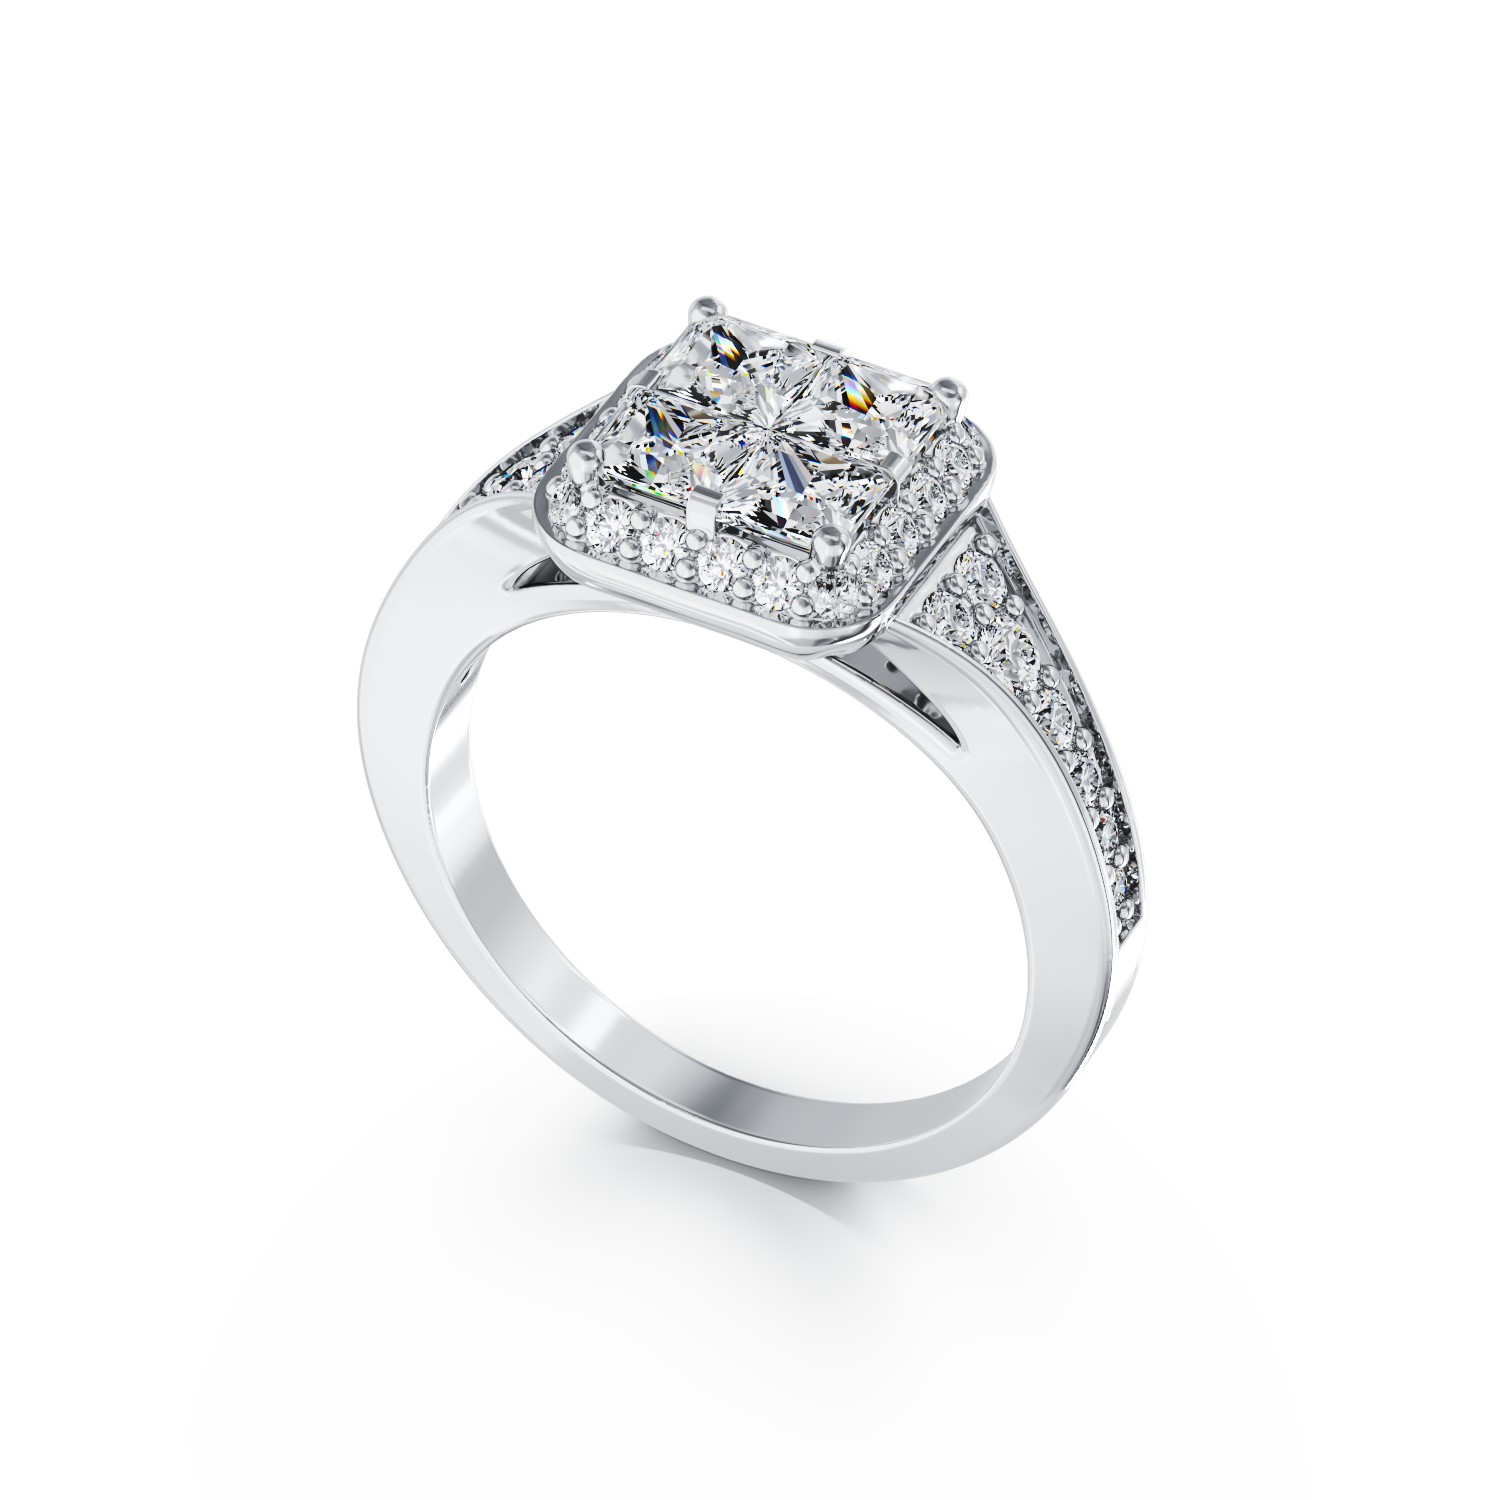 Eljegyzési gyűrű 18K-os fehér aranyból 0,53ct gyémánttal és 0,35ct gyémántokkal. Gramm: 4,65